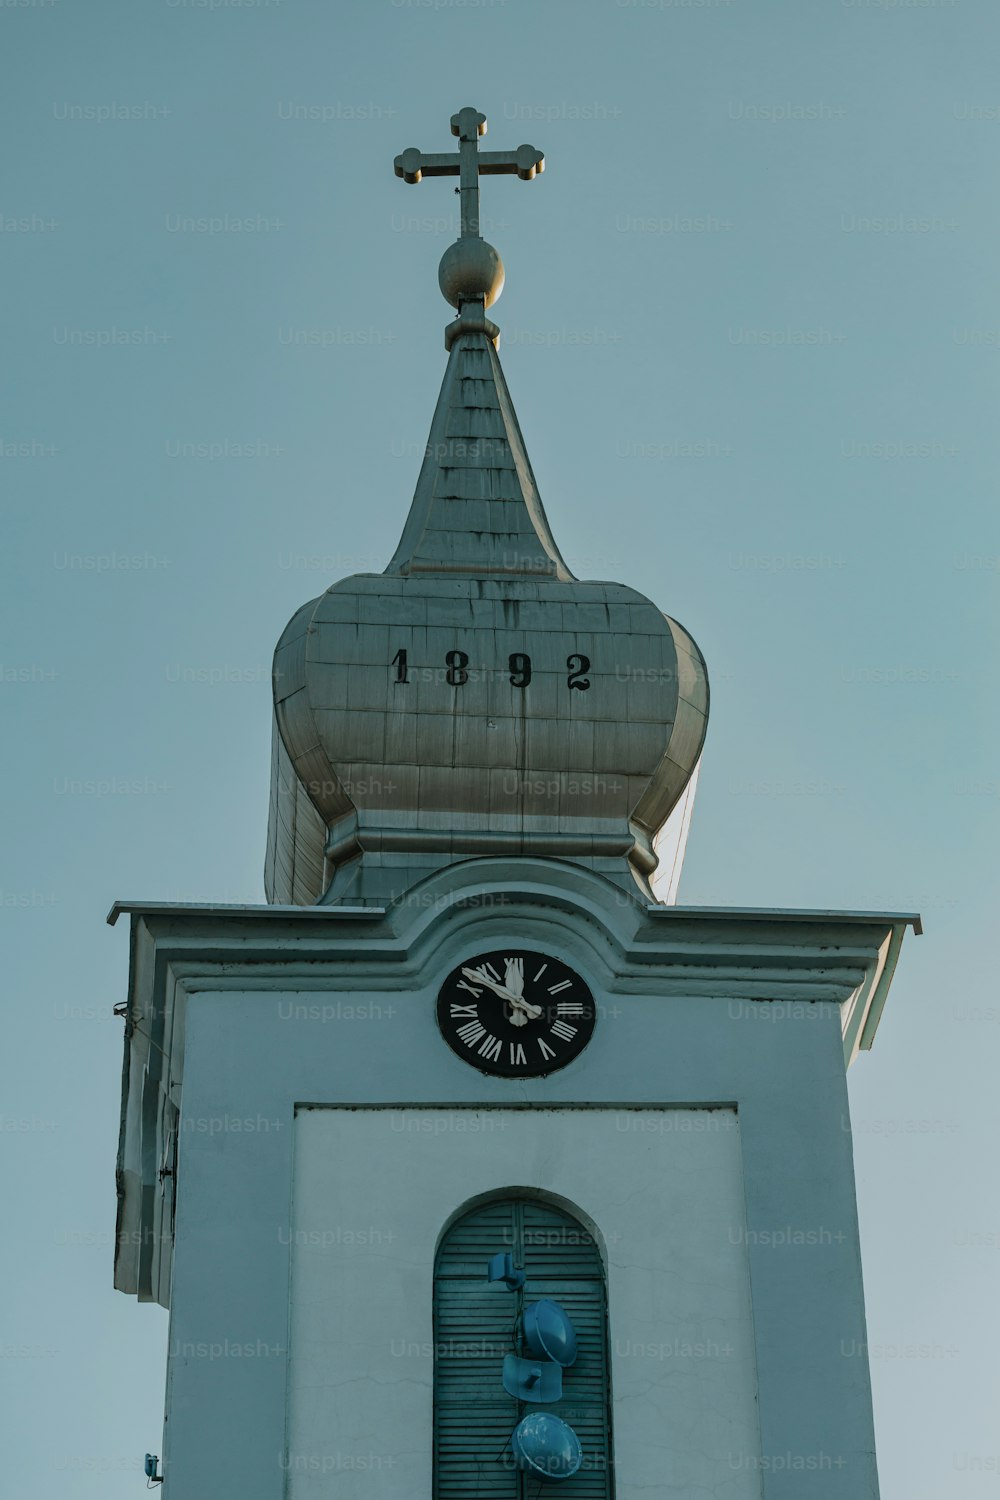 그 위에 십자가가 있는 시계탑